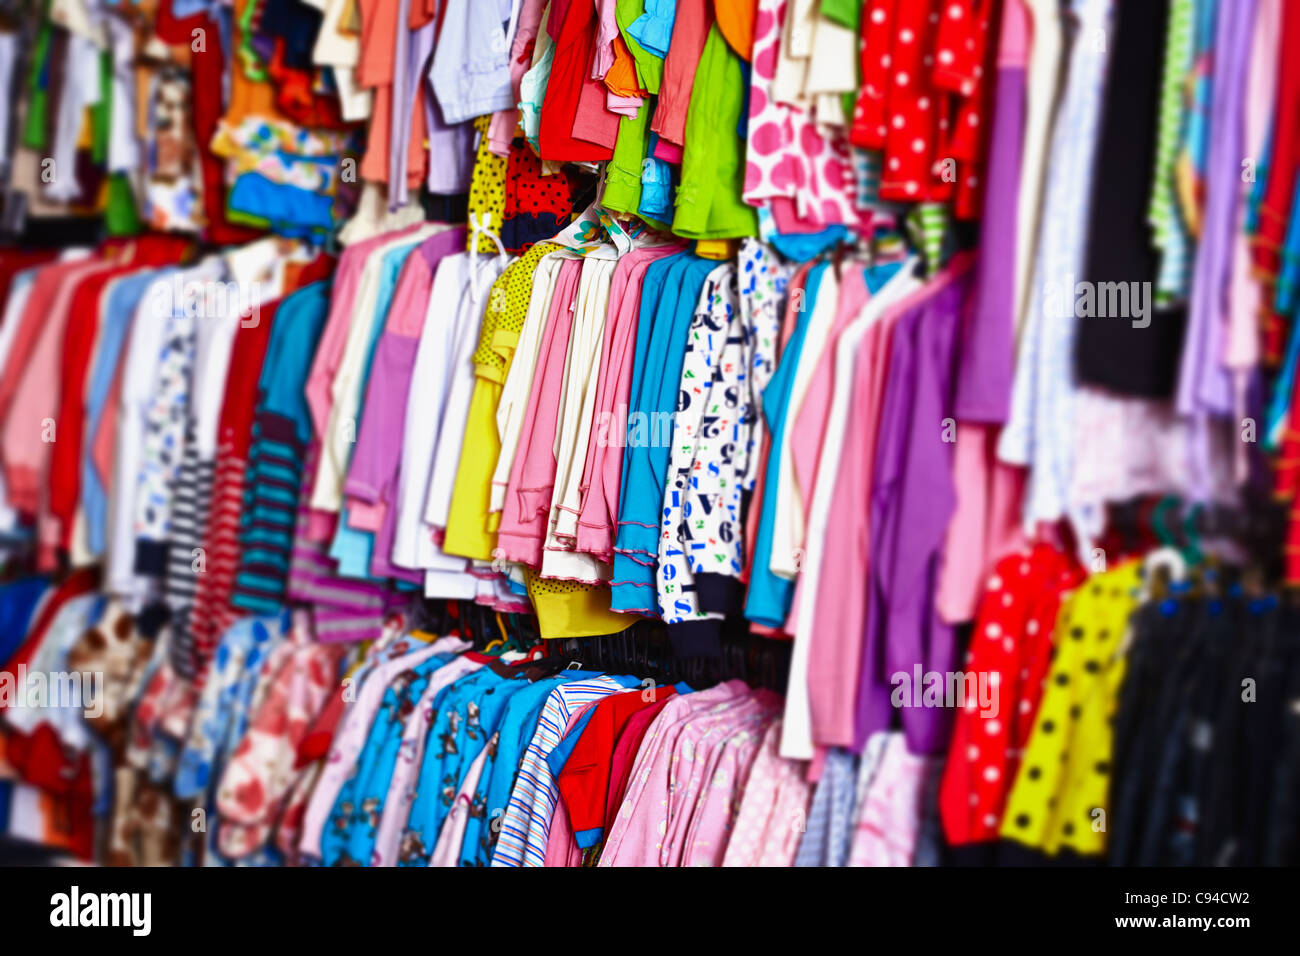 Bunte Babykleidung hängen Kleiderbügel in einem Geschäft Stockfotografie -  Alamy